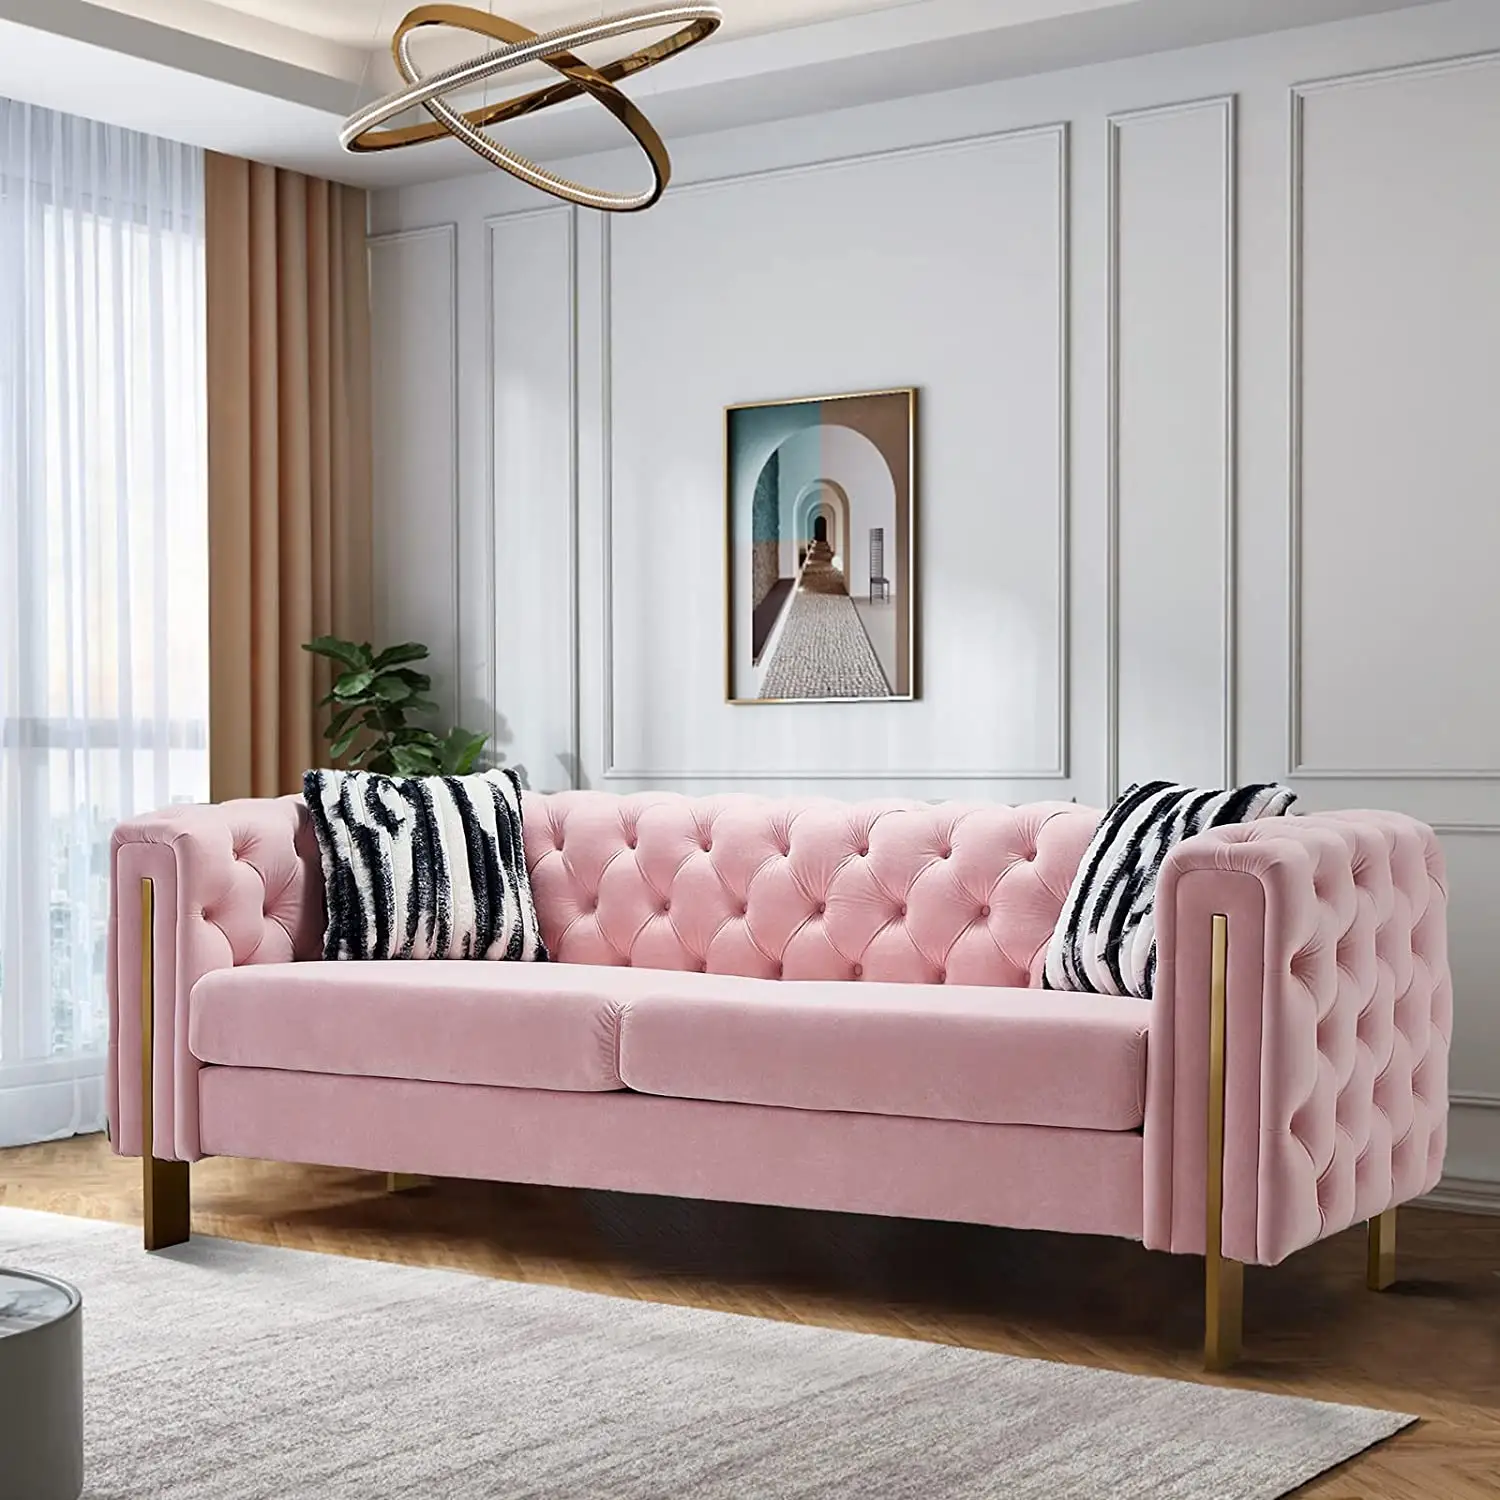 Novo design barato sofás e mobiliário de sofá com diferentes sofá